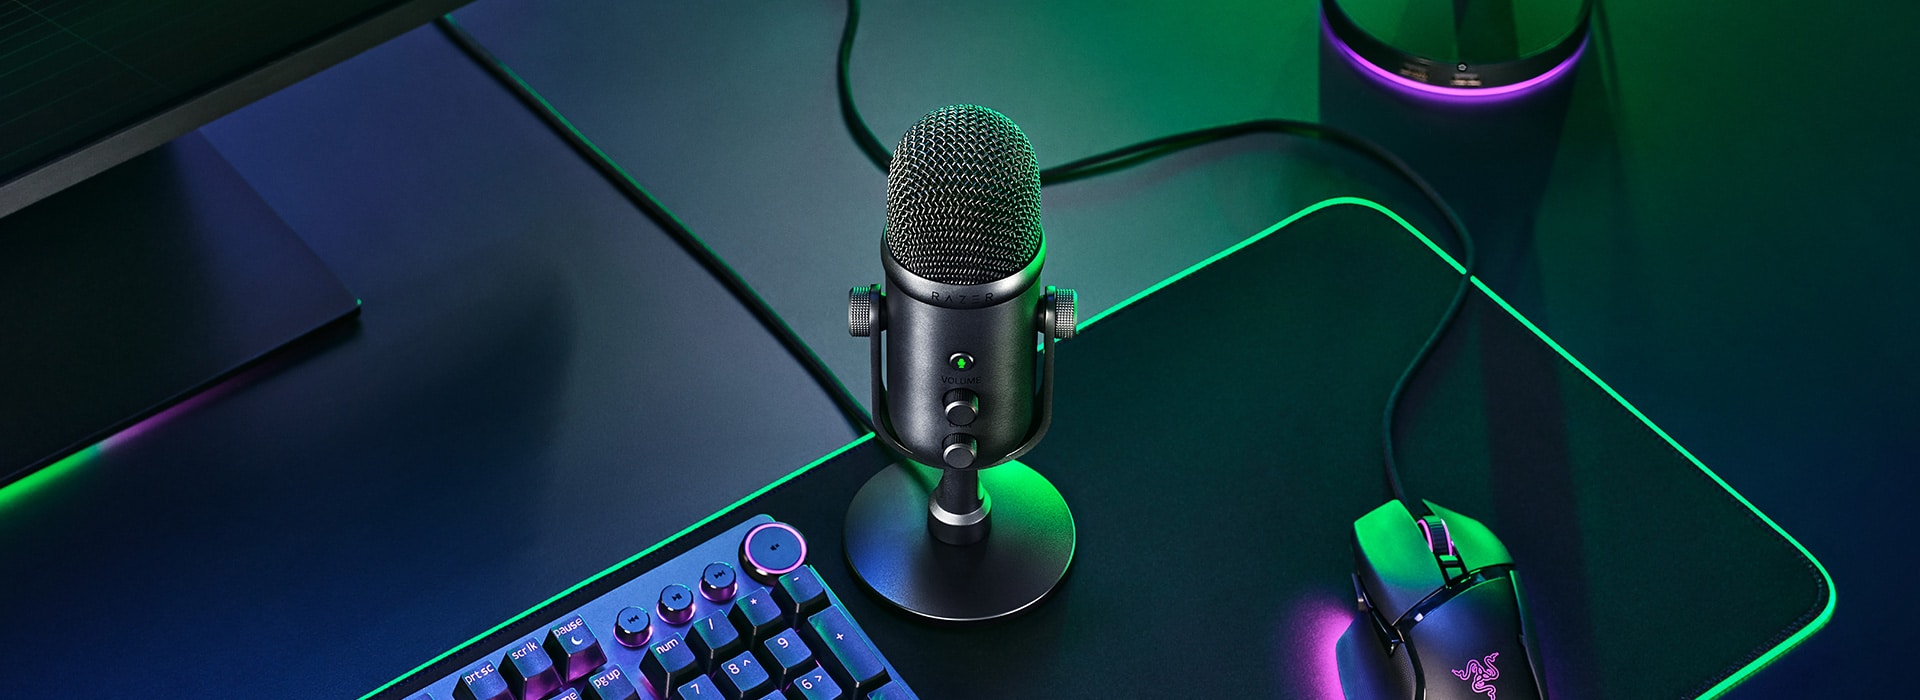 La recensione del microfono Razer Seiren V2 Pro: design e qualità in perfetto stile Razer thumbnail